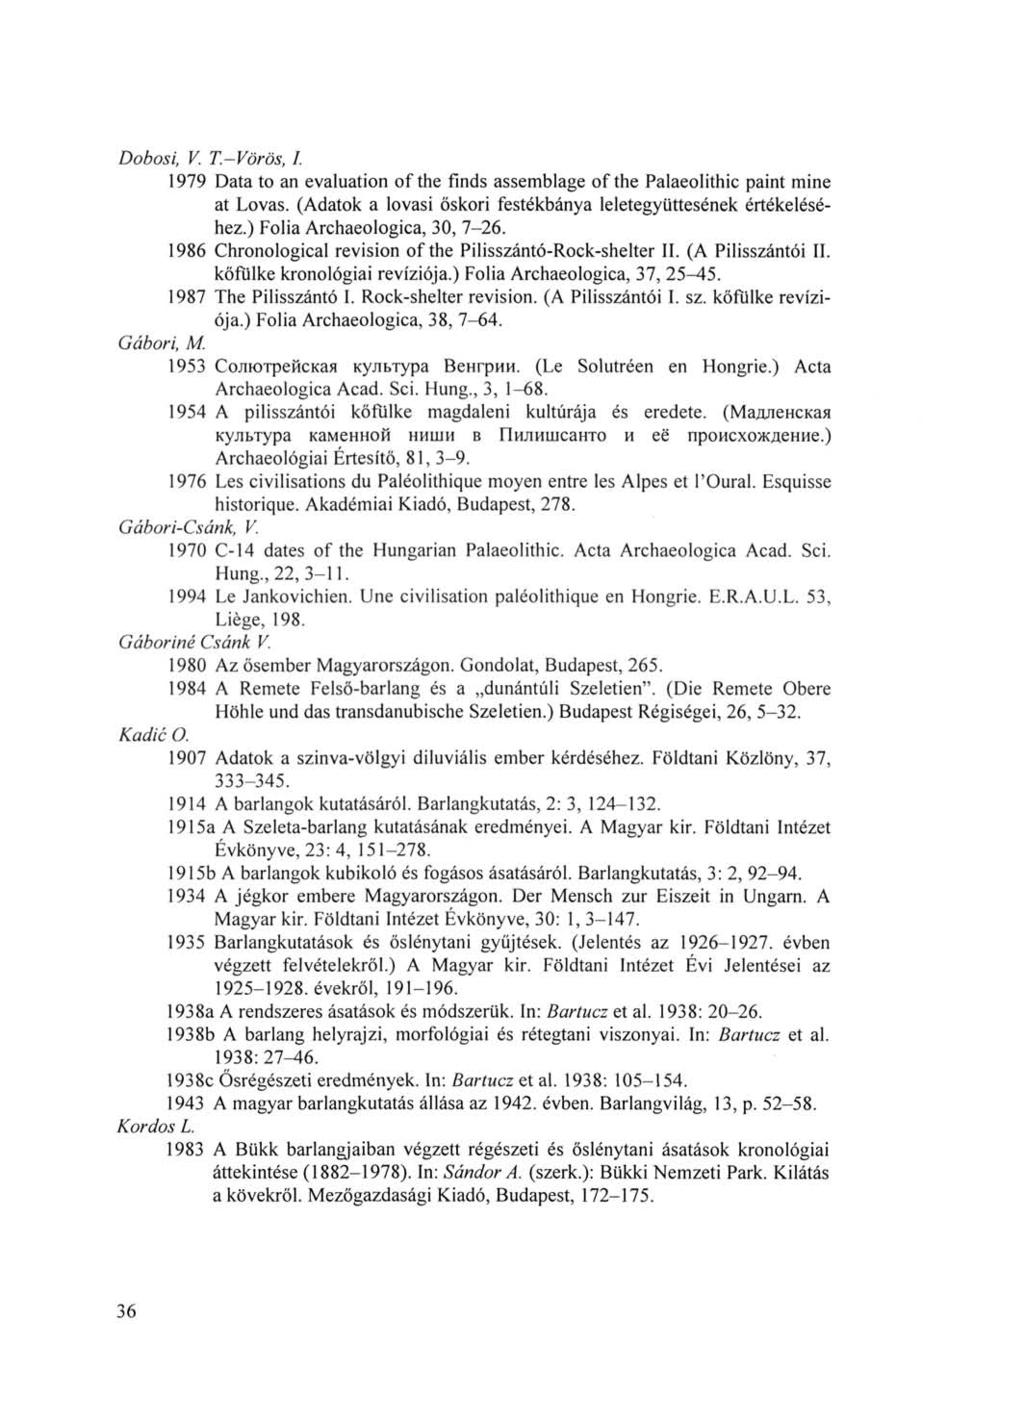 Dobosi, V. T.-Vörös, I. 1979 Data to an evaluation of the finds assemblage of the Palaeolithic paint mine at Lovas. (Adatok a lovasi őskori festékbánya leletegyüttesének értékeléséhez.